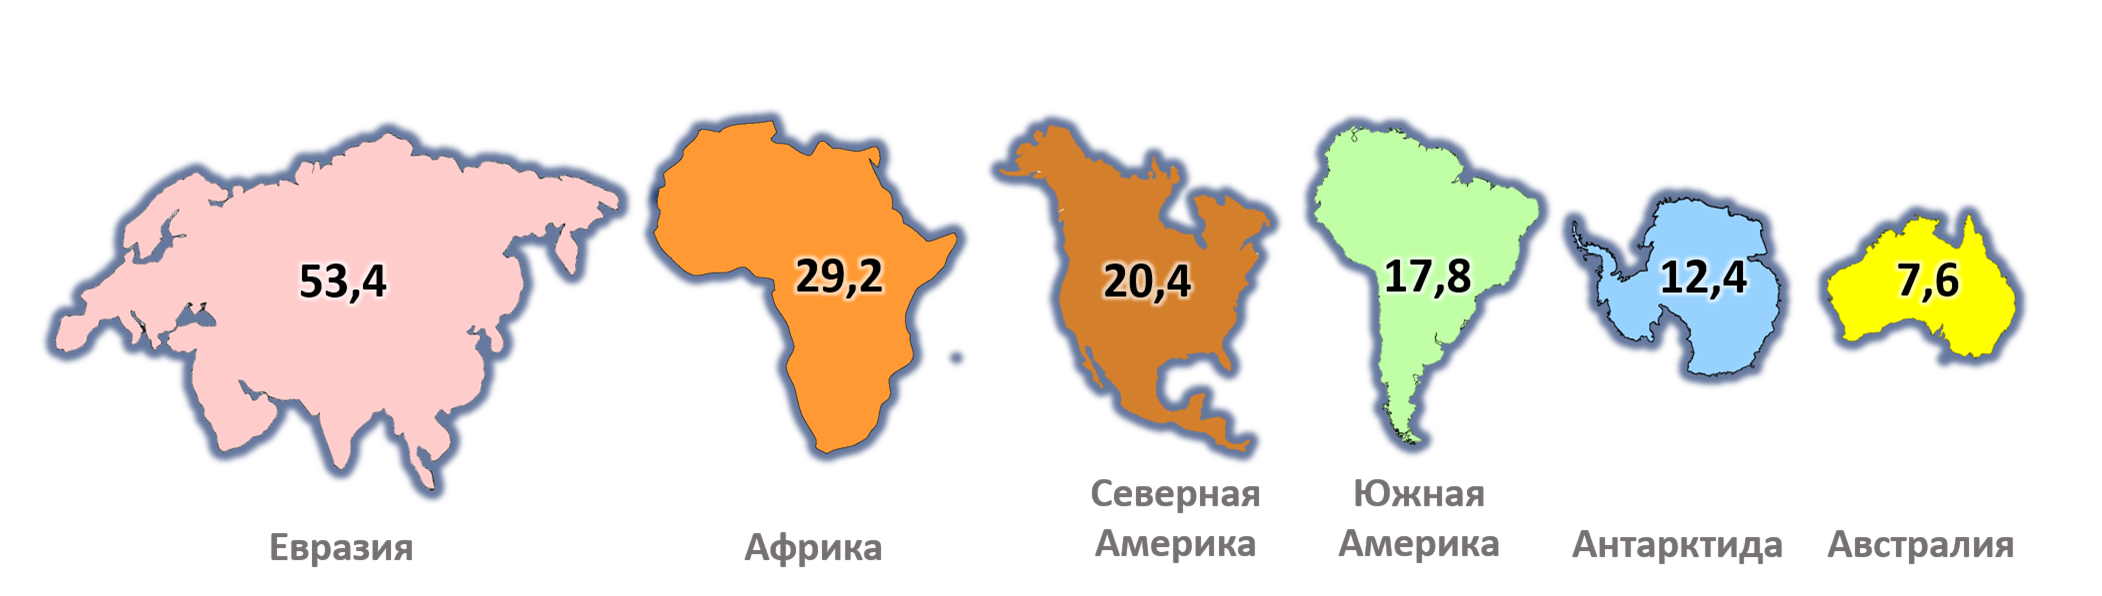 Карта отдельных материков. Евразия Африка Северная Америка Южная Америка Австралия Антарктида. Сравнение размеров материков на карте. Размеры материков по площади.